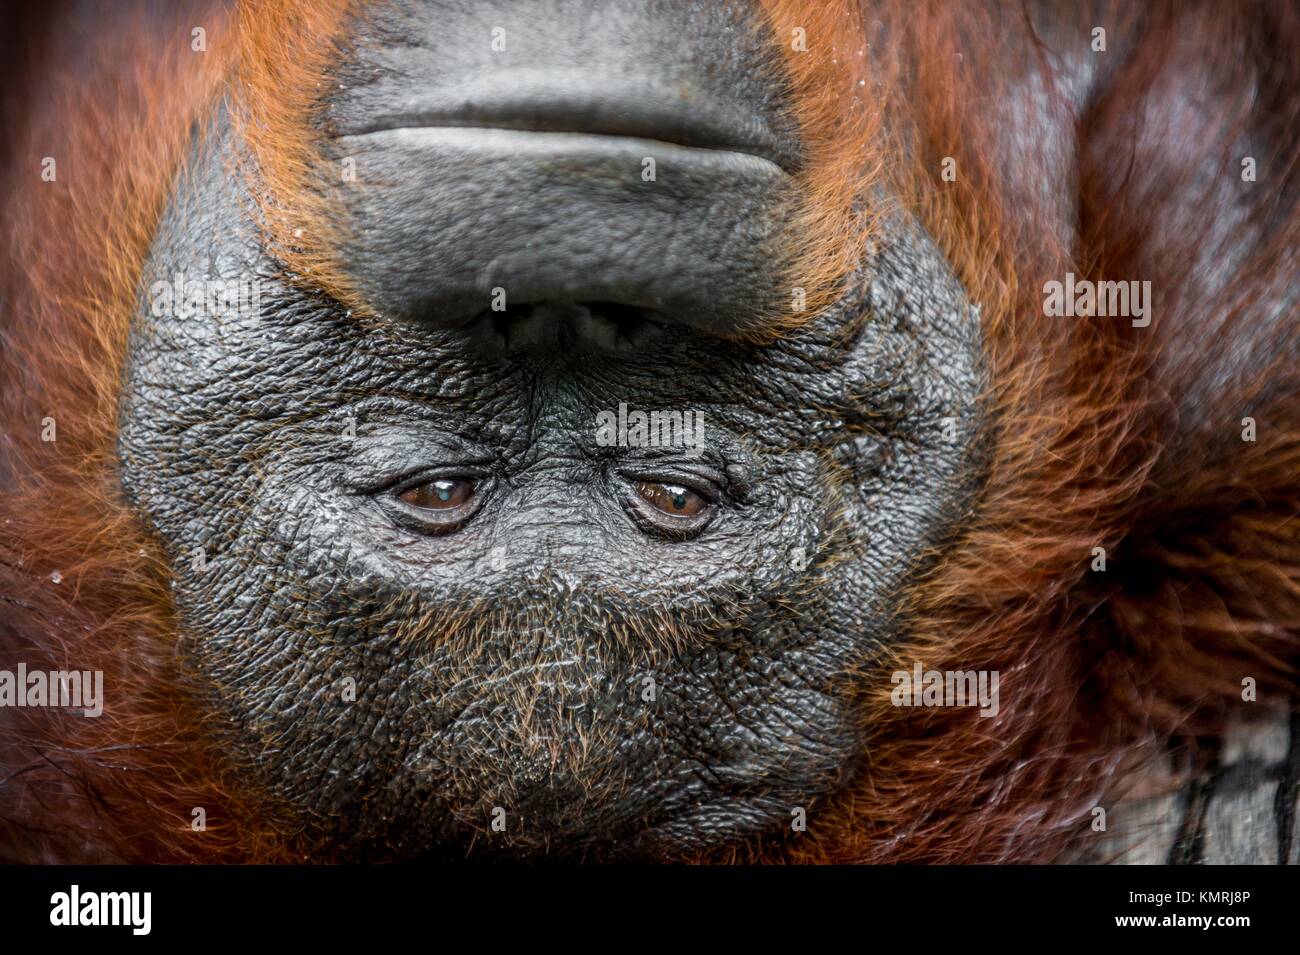 Eine Nahaufnahme Portrait der Orang-utan (Pongo pygmaeus) in einem kurzen Abstand in der wilden Natur. Insel Borneo. Indonesien. Stockfoto